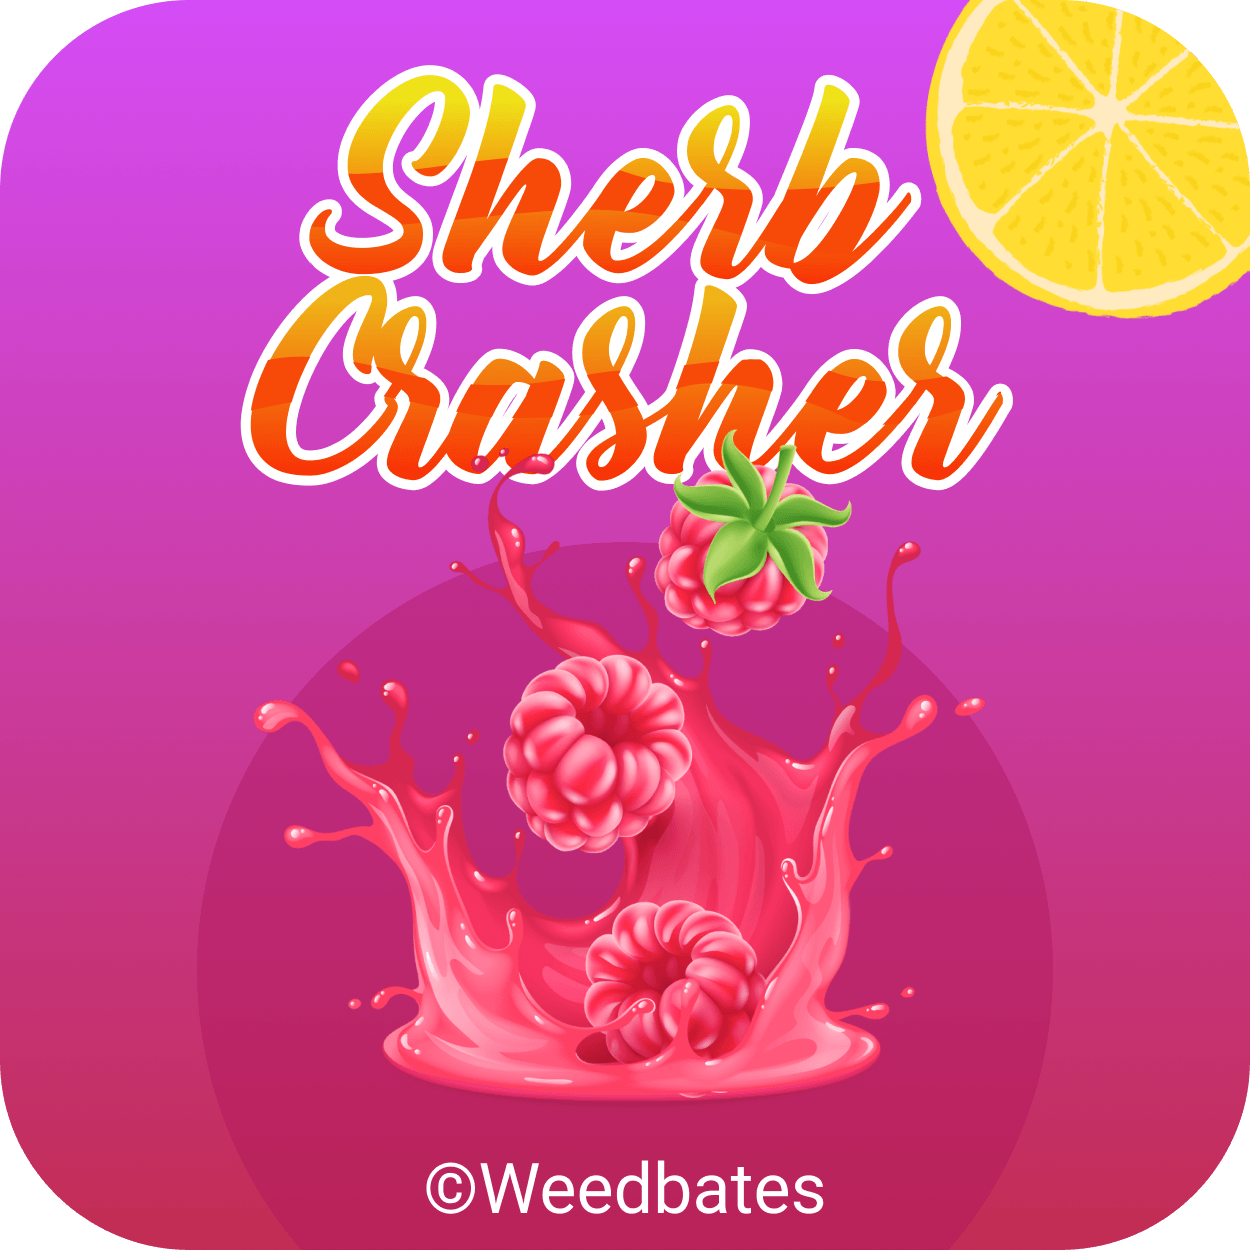 Sherb Crasher weed